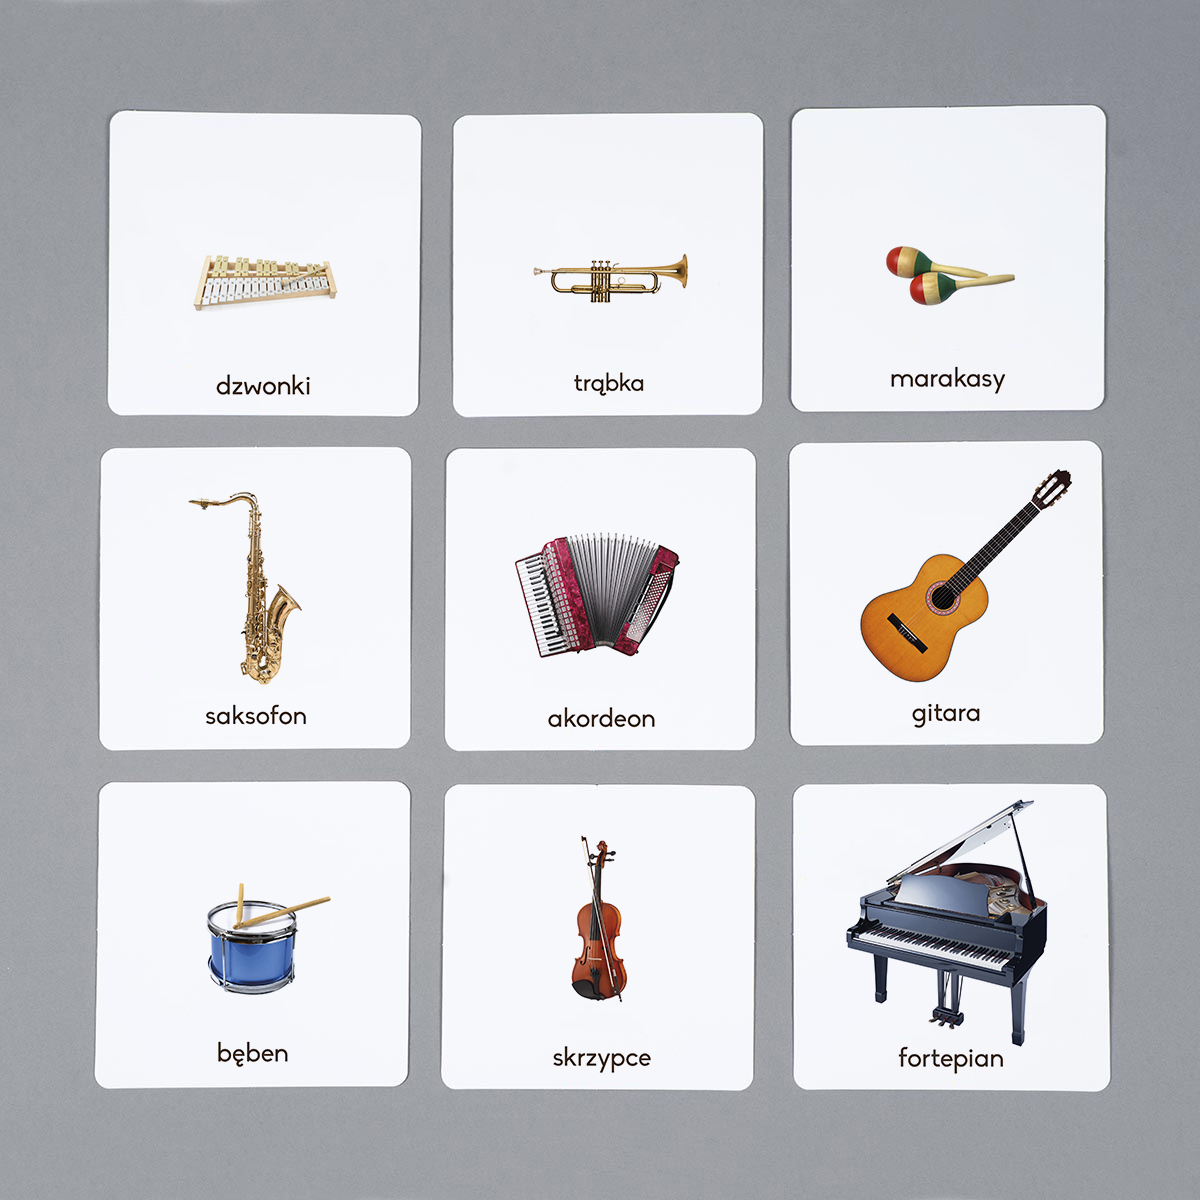 Учить музыкальные инструменты. Музыкальные инструменты для детей. Карточки музыкальные инструменты для детей. Музыкальные инструменты для детей названия. Изображение музыкальных инструментов для детей.